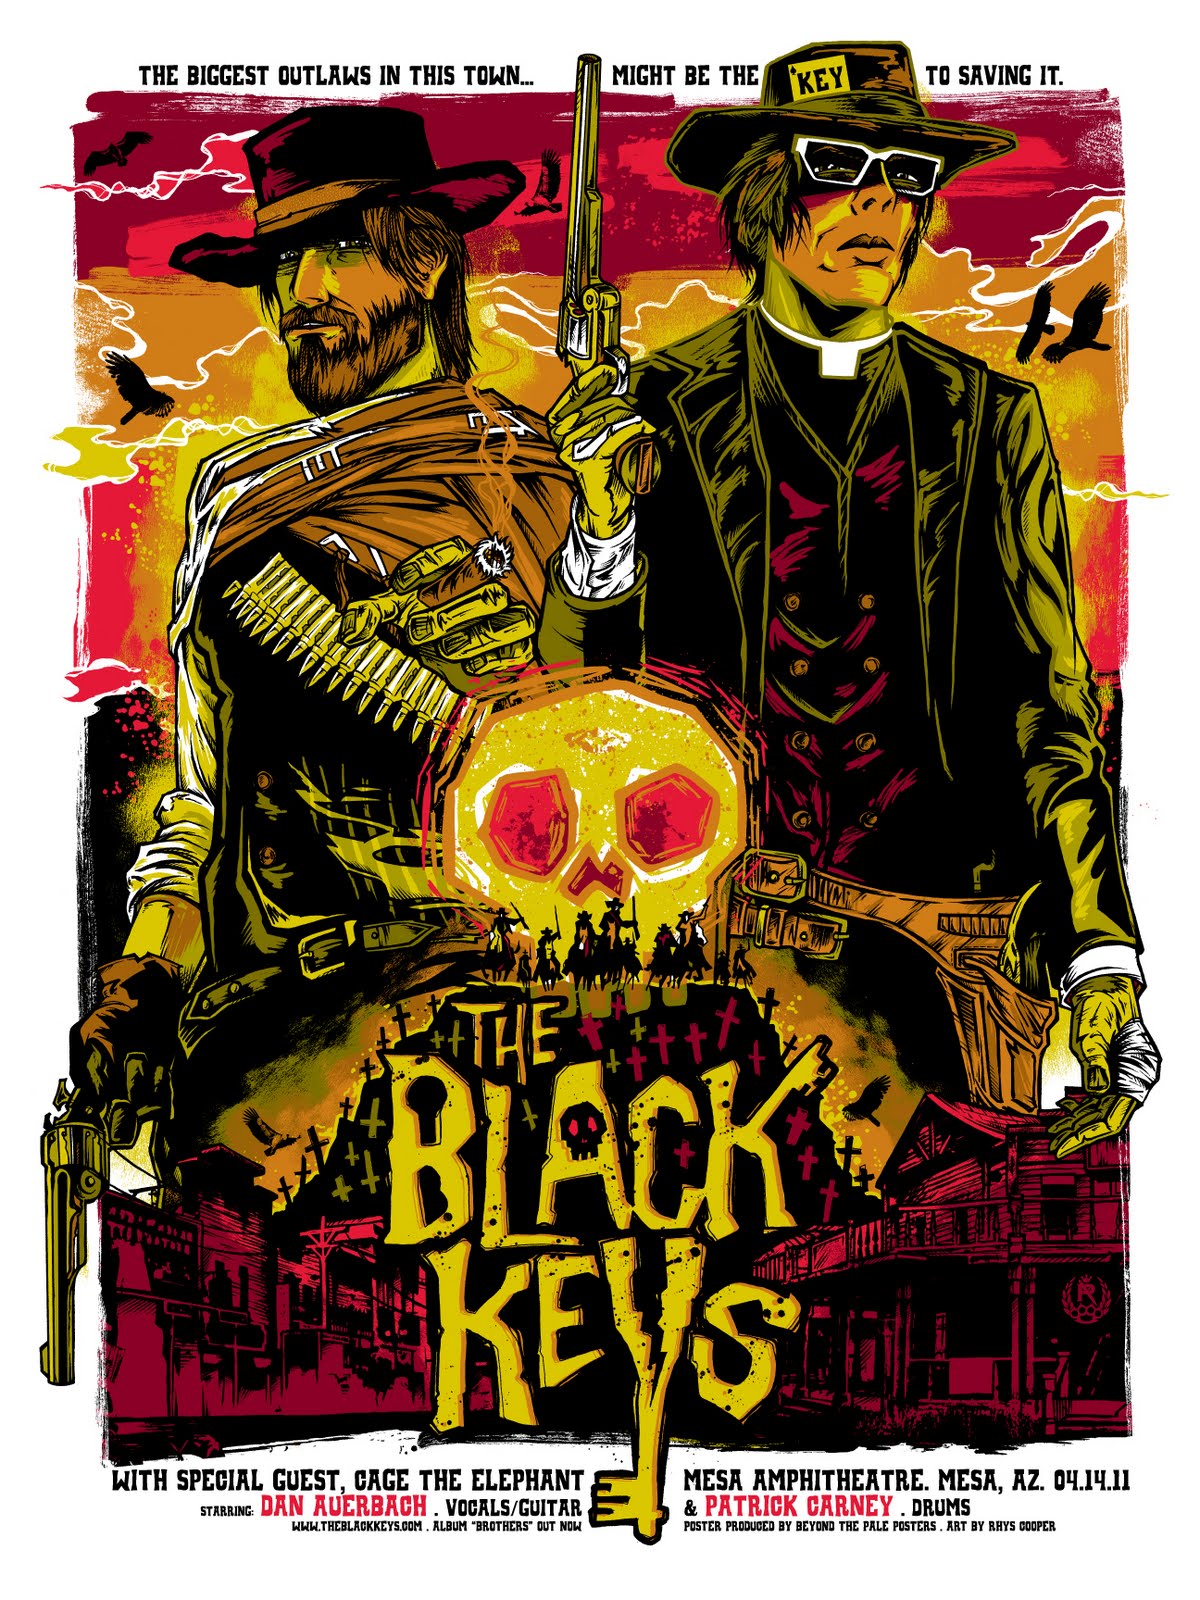 BLACK-KEYS-Melb2011-Outlaw-poster-fin.jpg